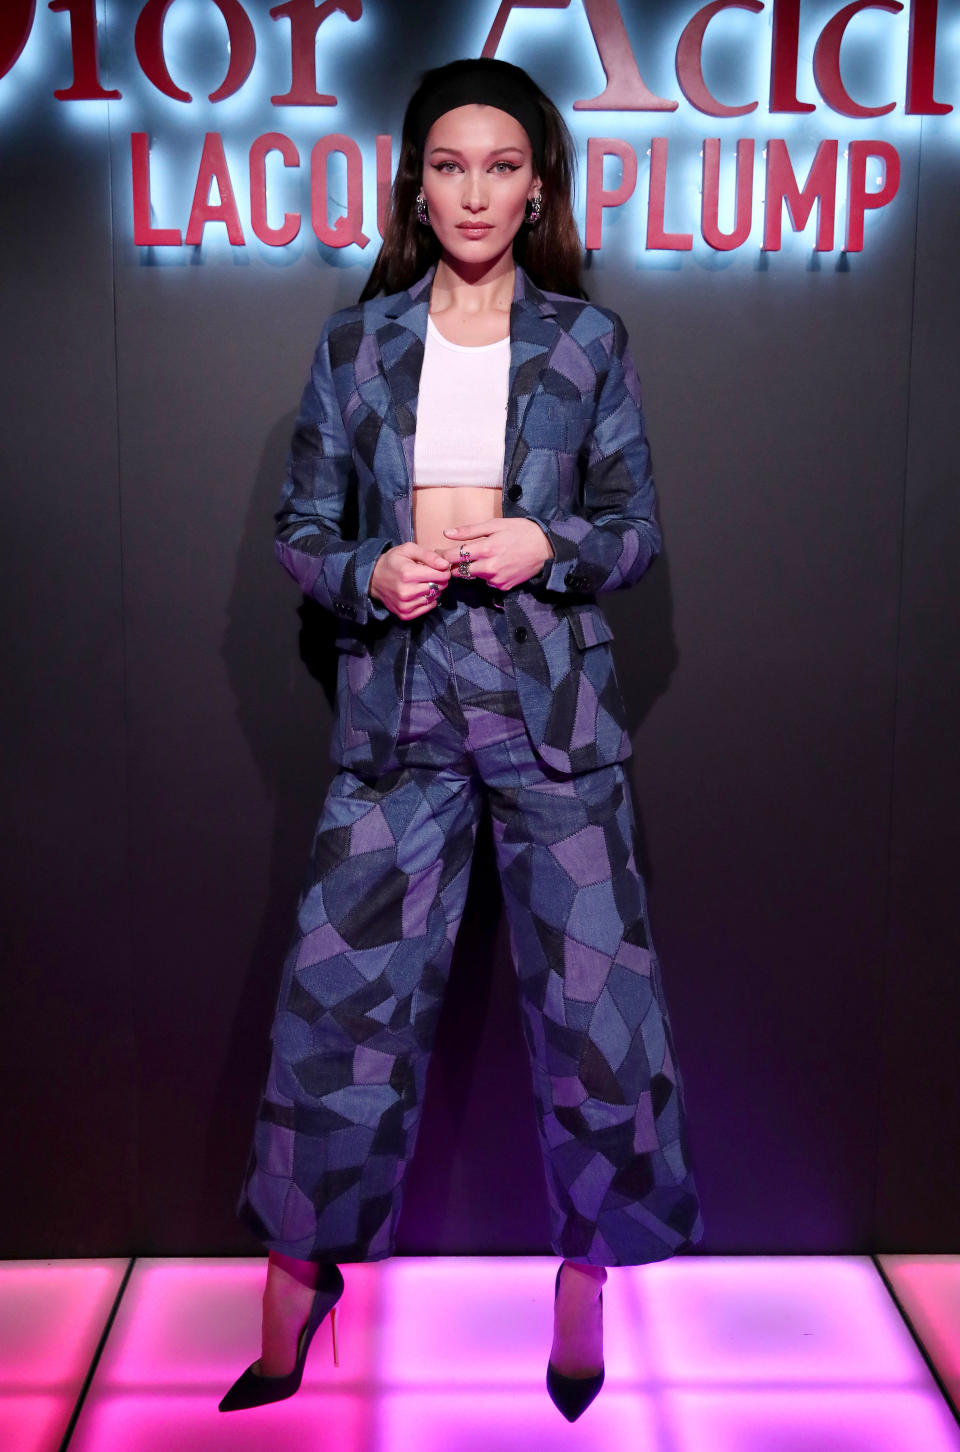 Bella Hadid at the Dior Addict Lacquer Plump event in LA